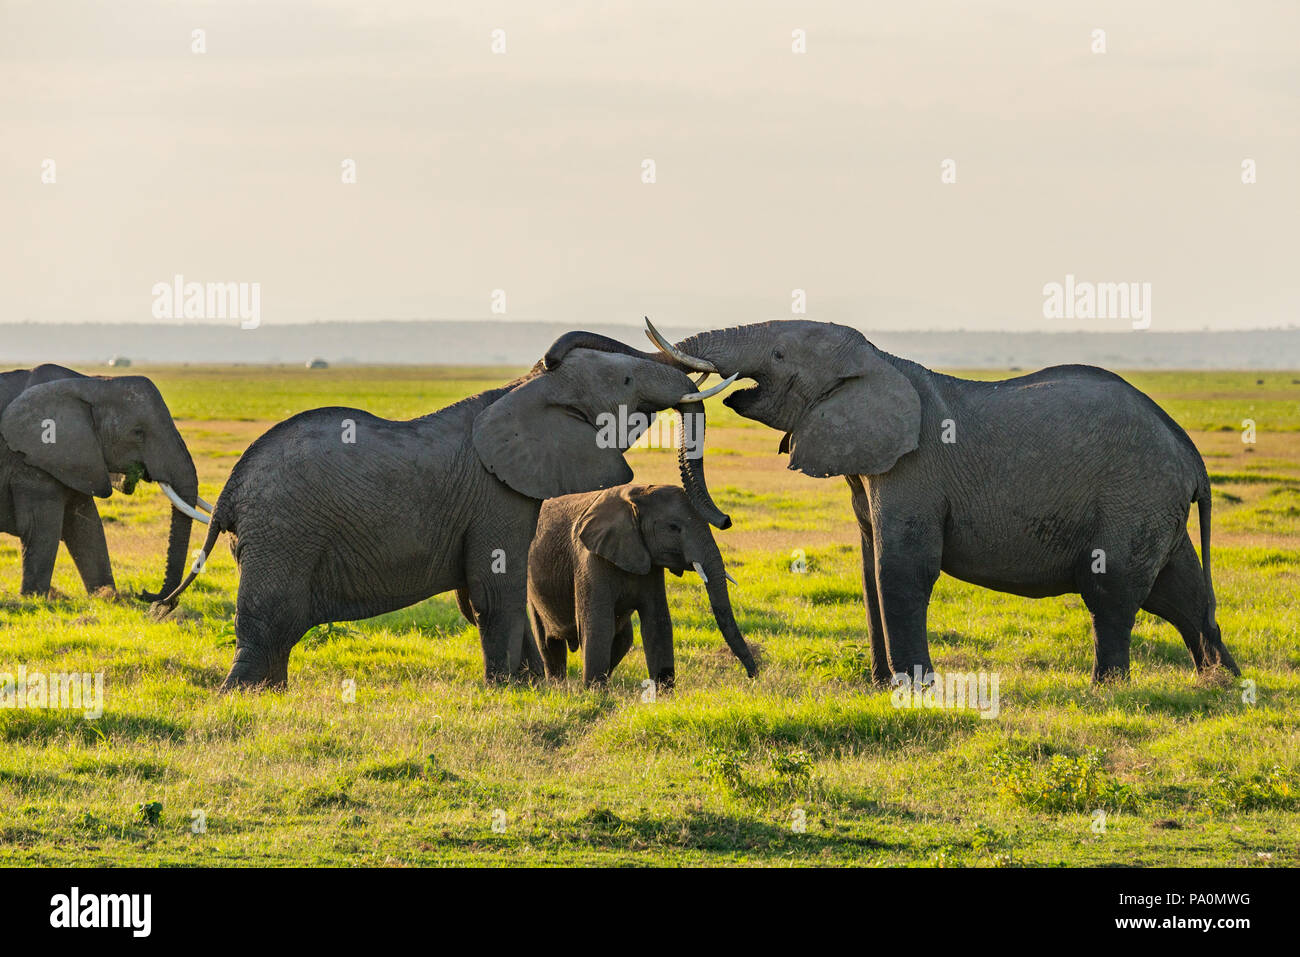 Wild Elephants in Africa Stock Photo